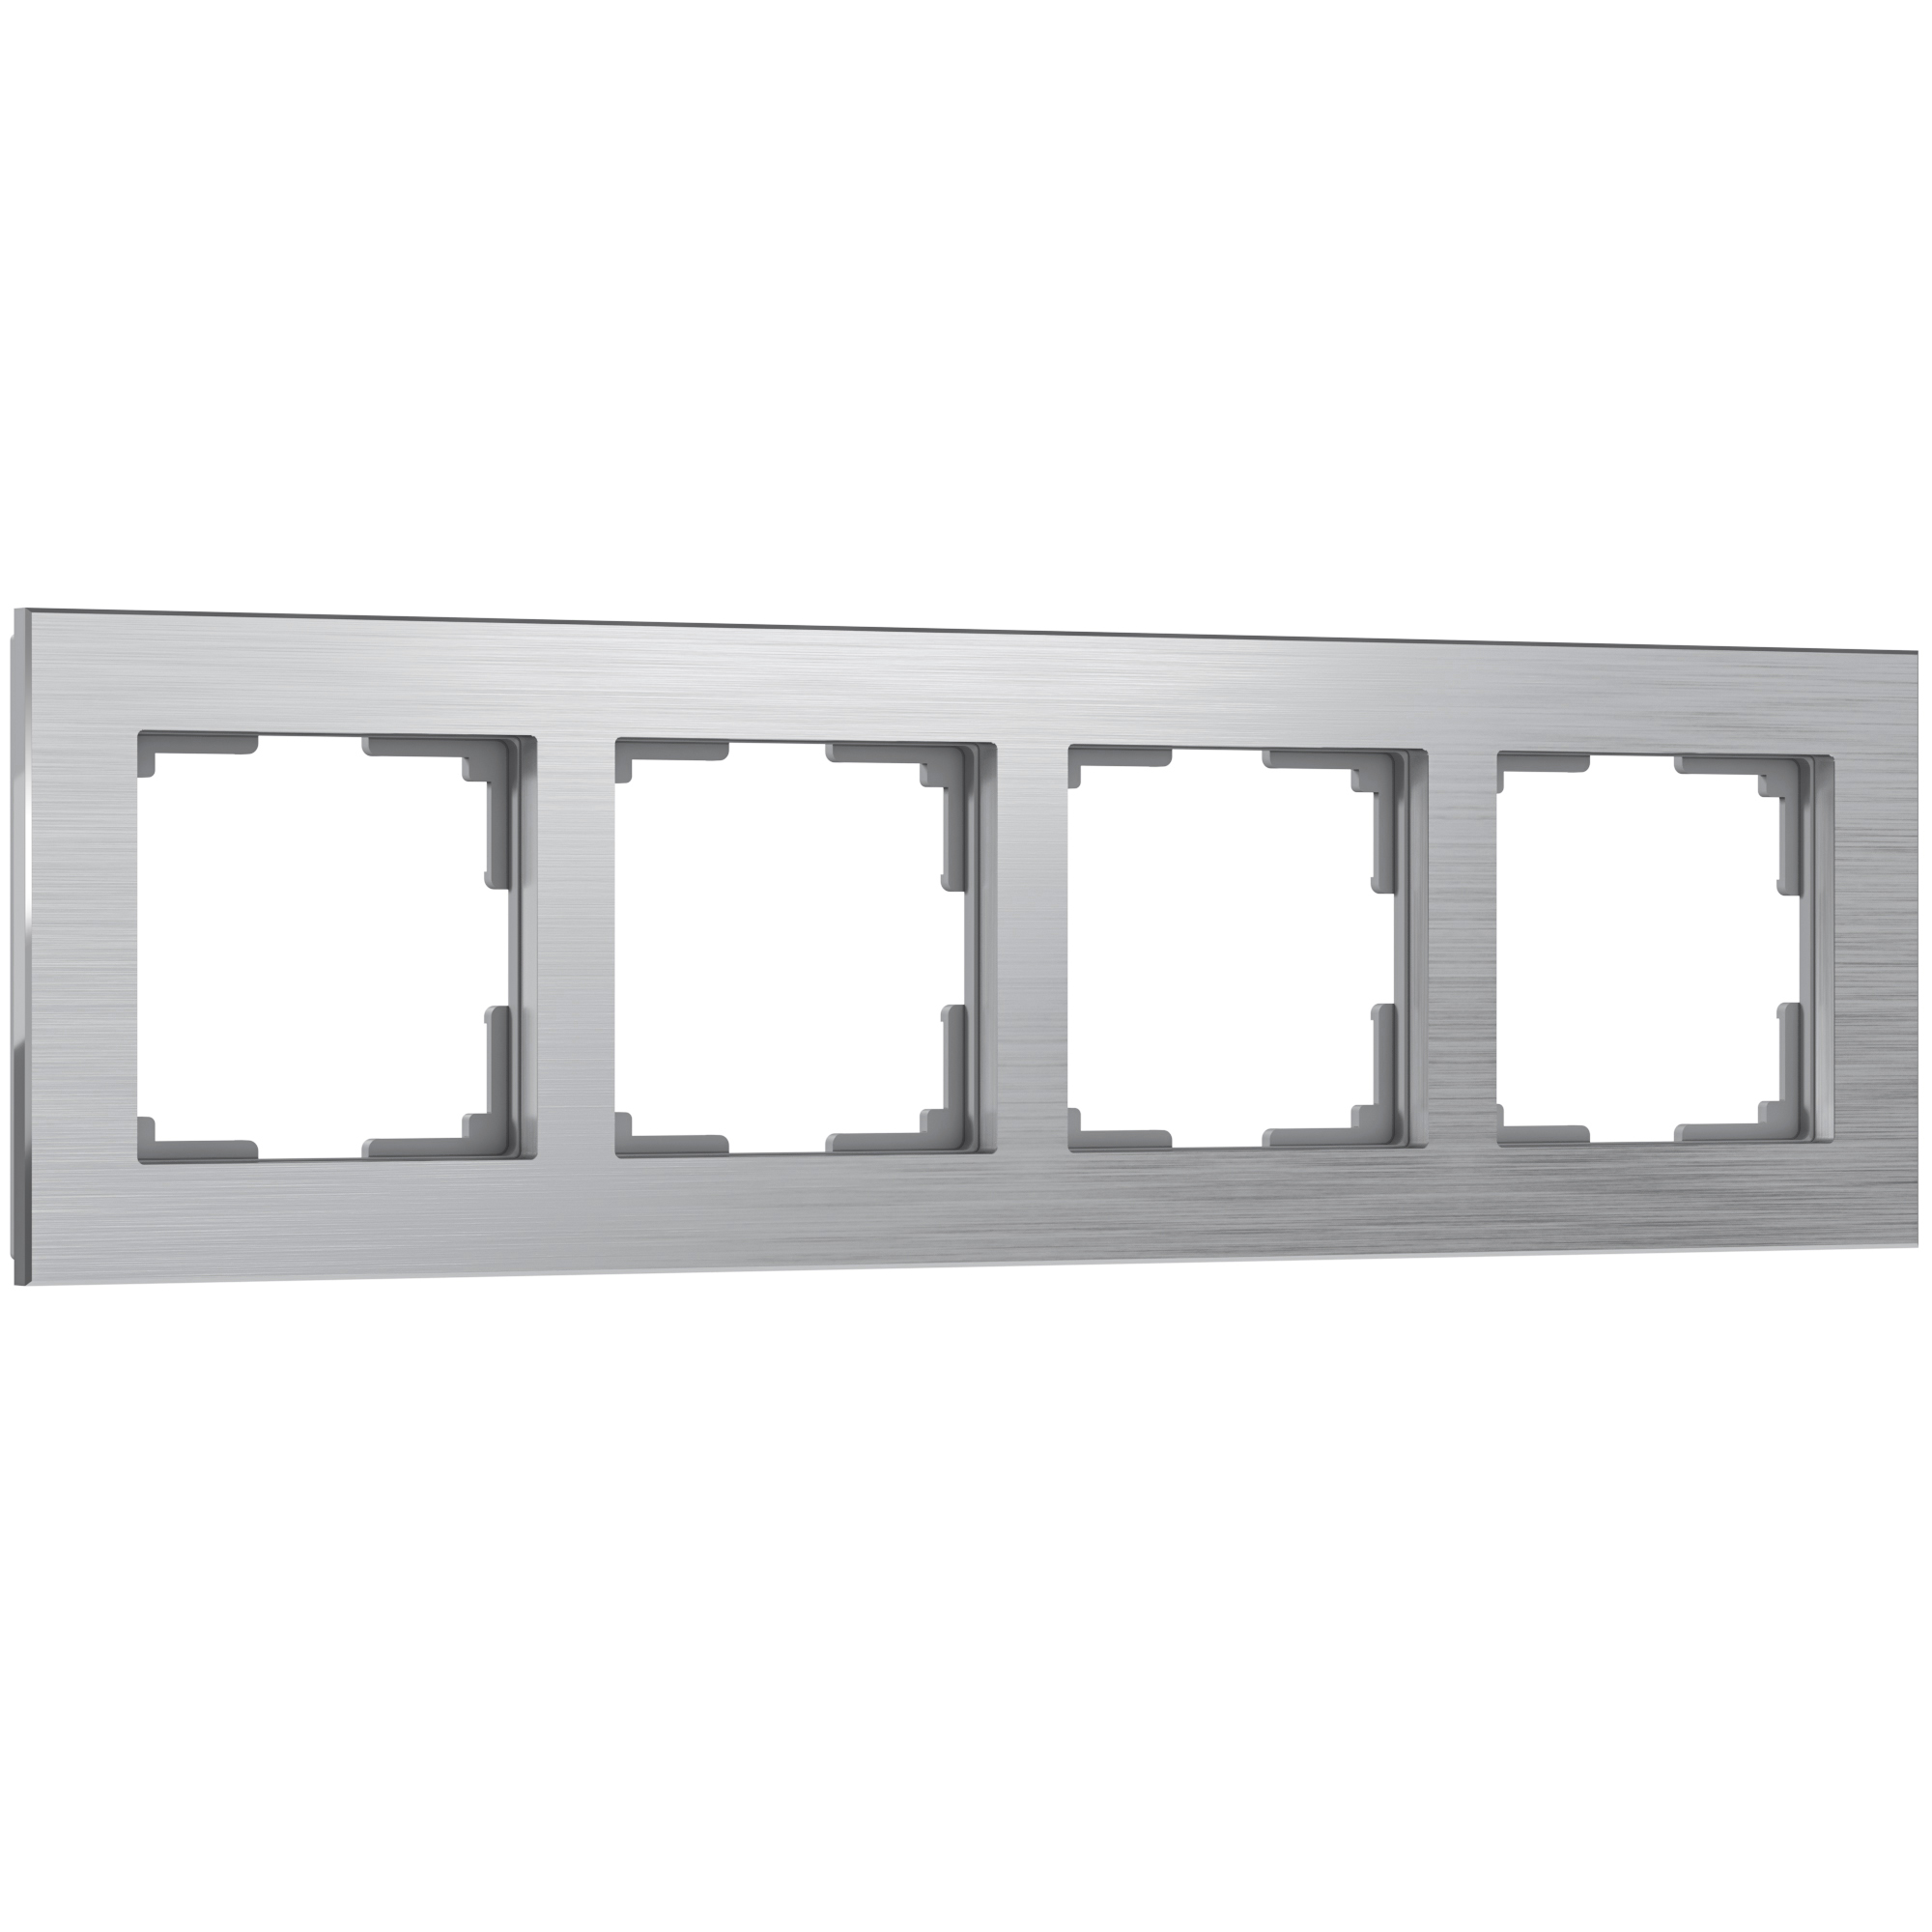 Рамка для розетки / выключателя на 4 поста Werkel W0041706 Aluminium алюминий рамка на 4 поста werkel aluminium w0041706 4690389158070